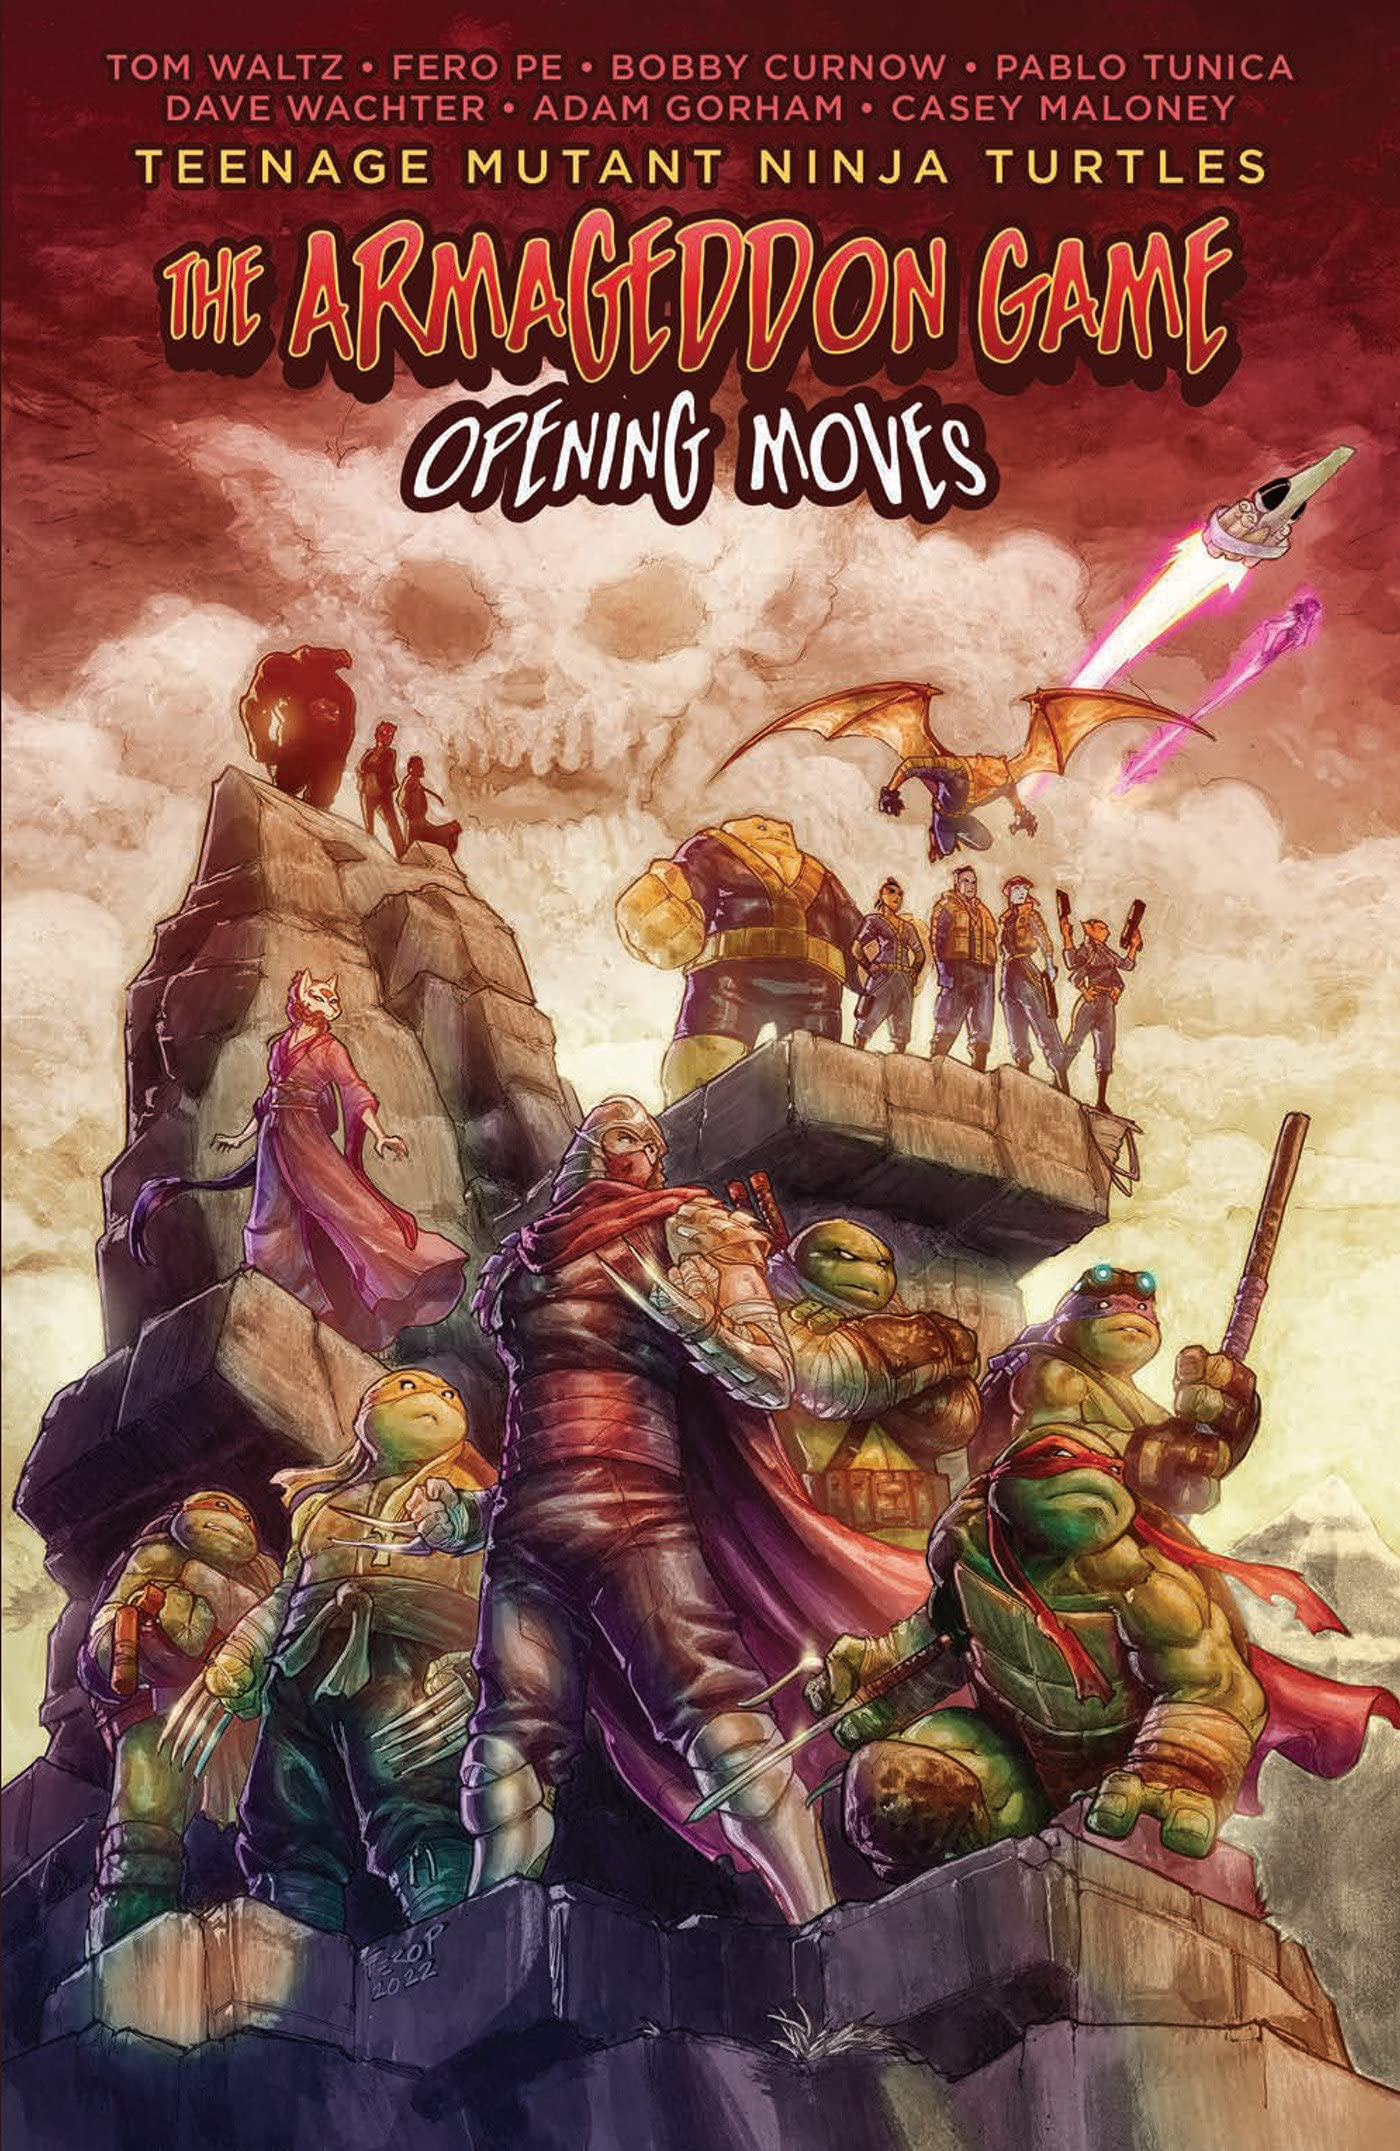 Teenage Mutant Ninja Turtles - The Armageddon Game: Opening Moves